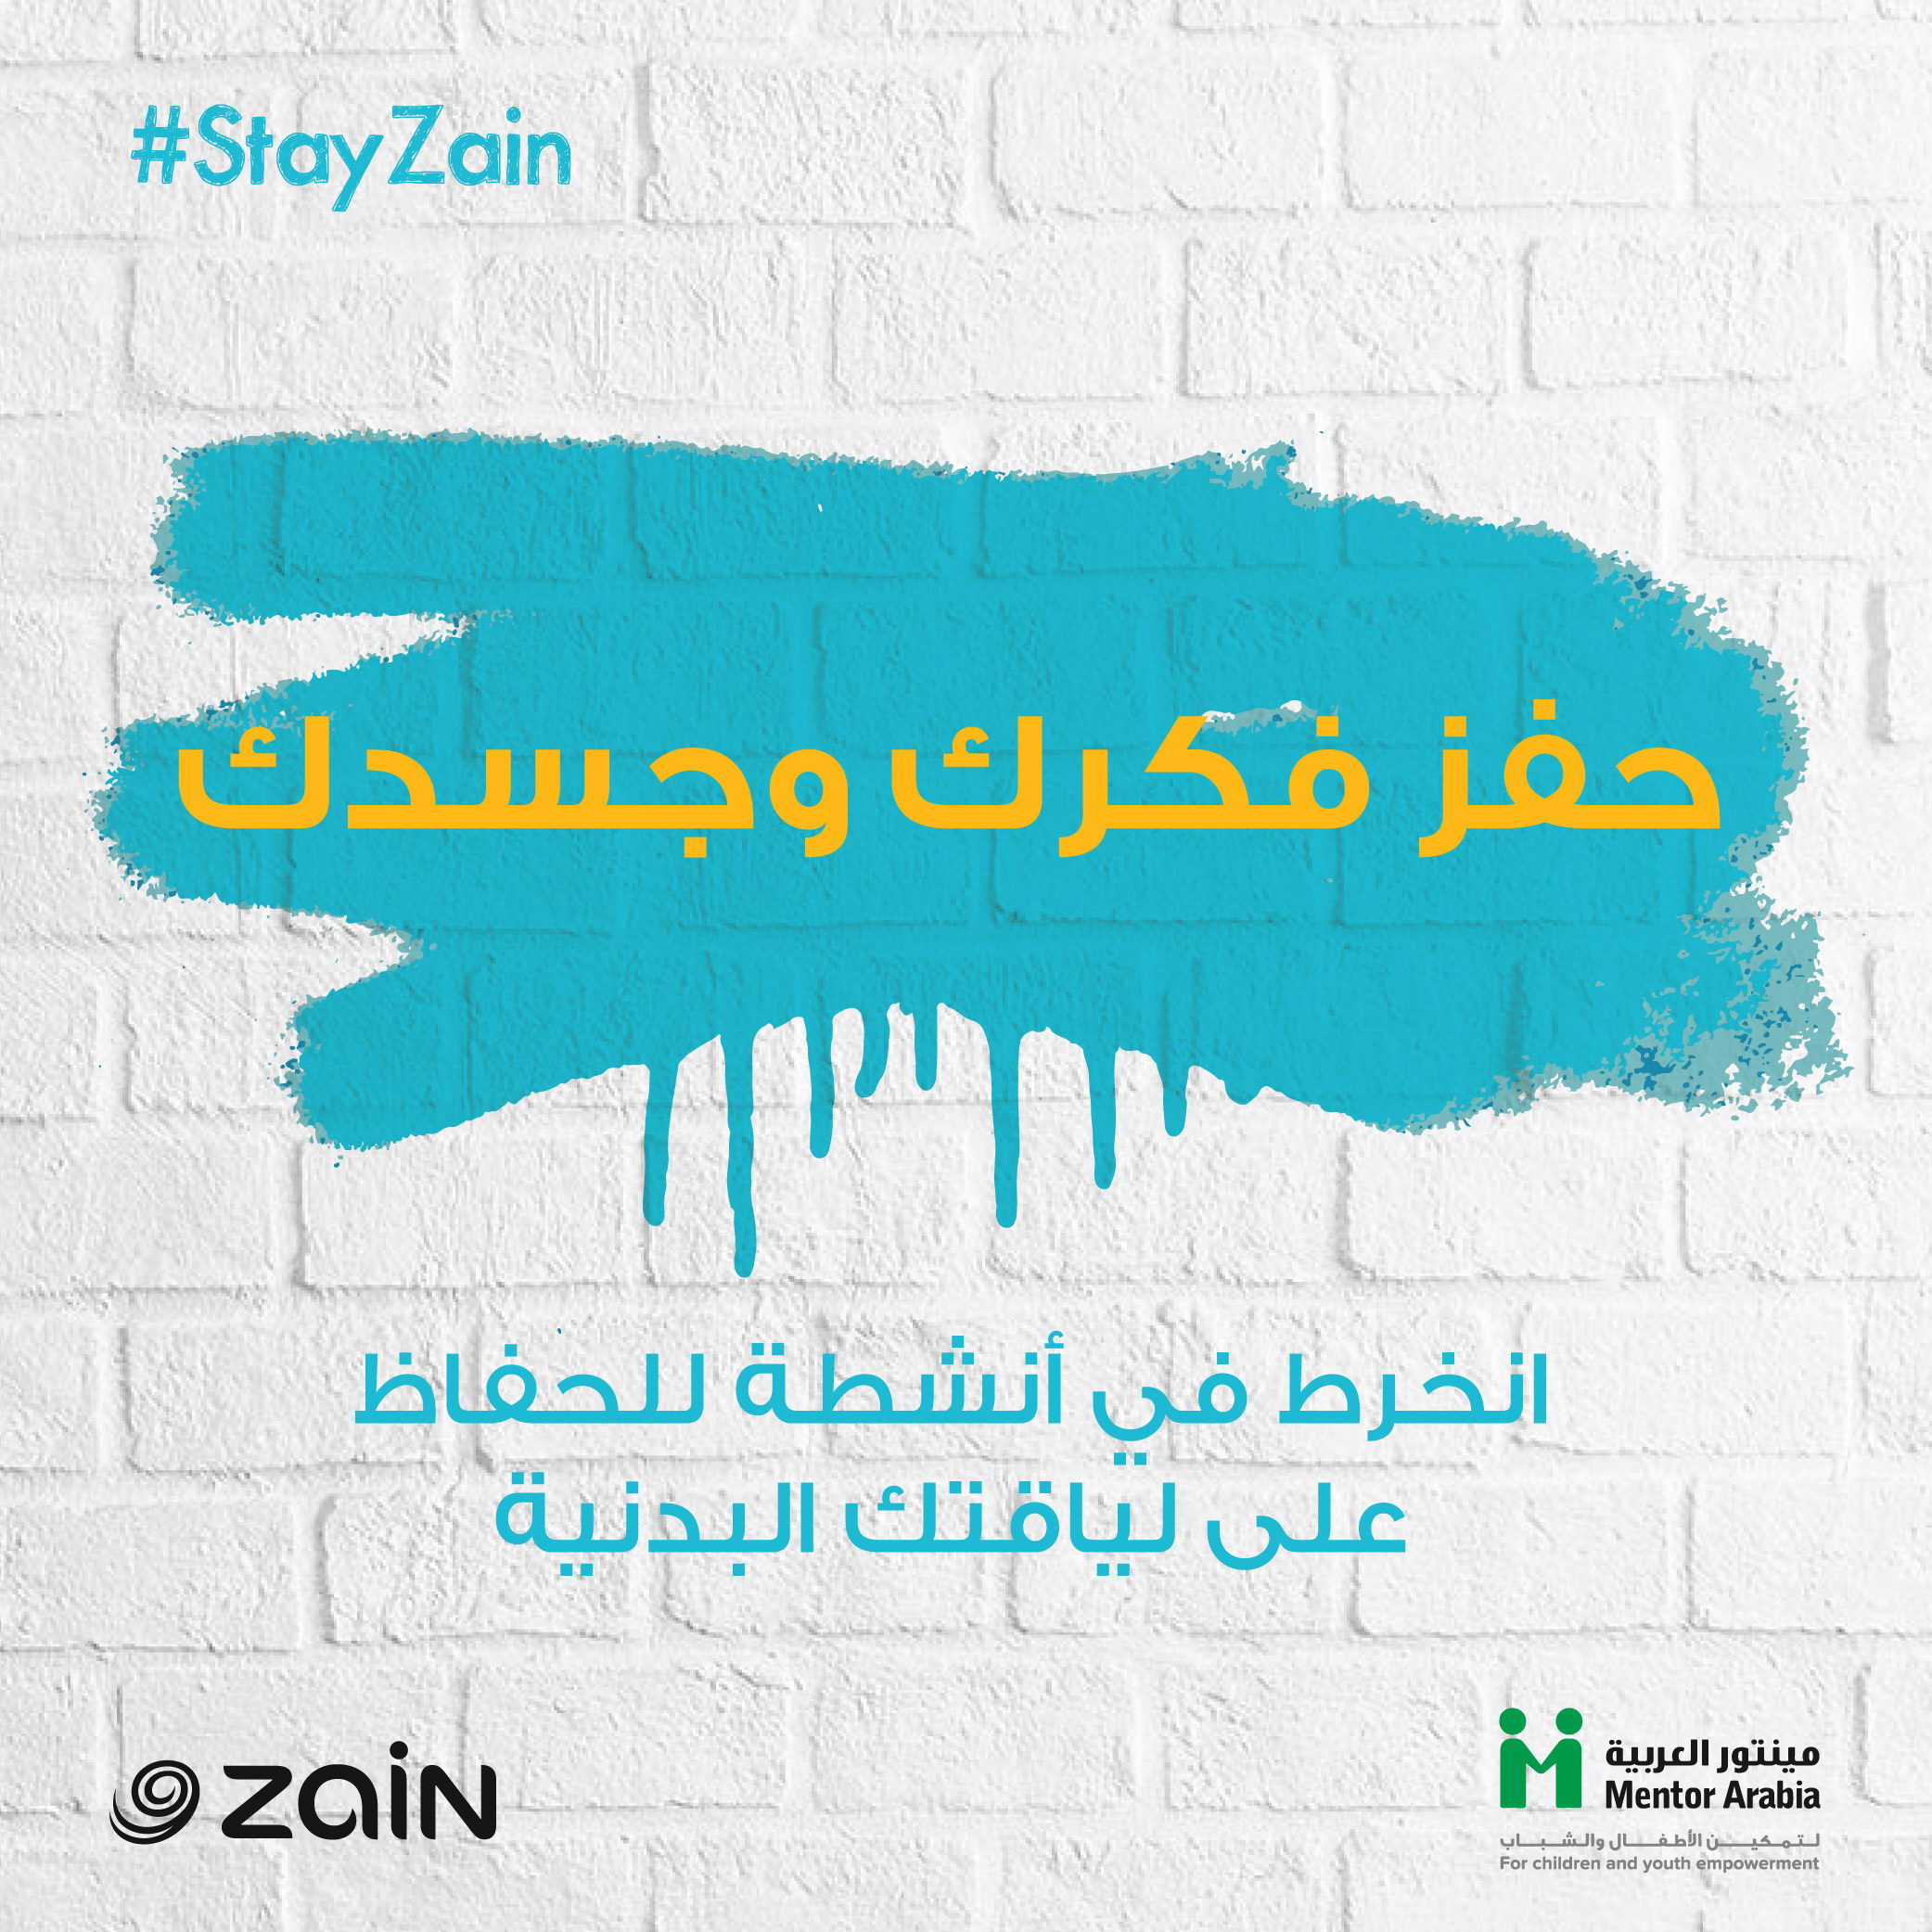 مجموعة زين و《مينتور العربية》 تطلقان حملة #خلّك_زين